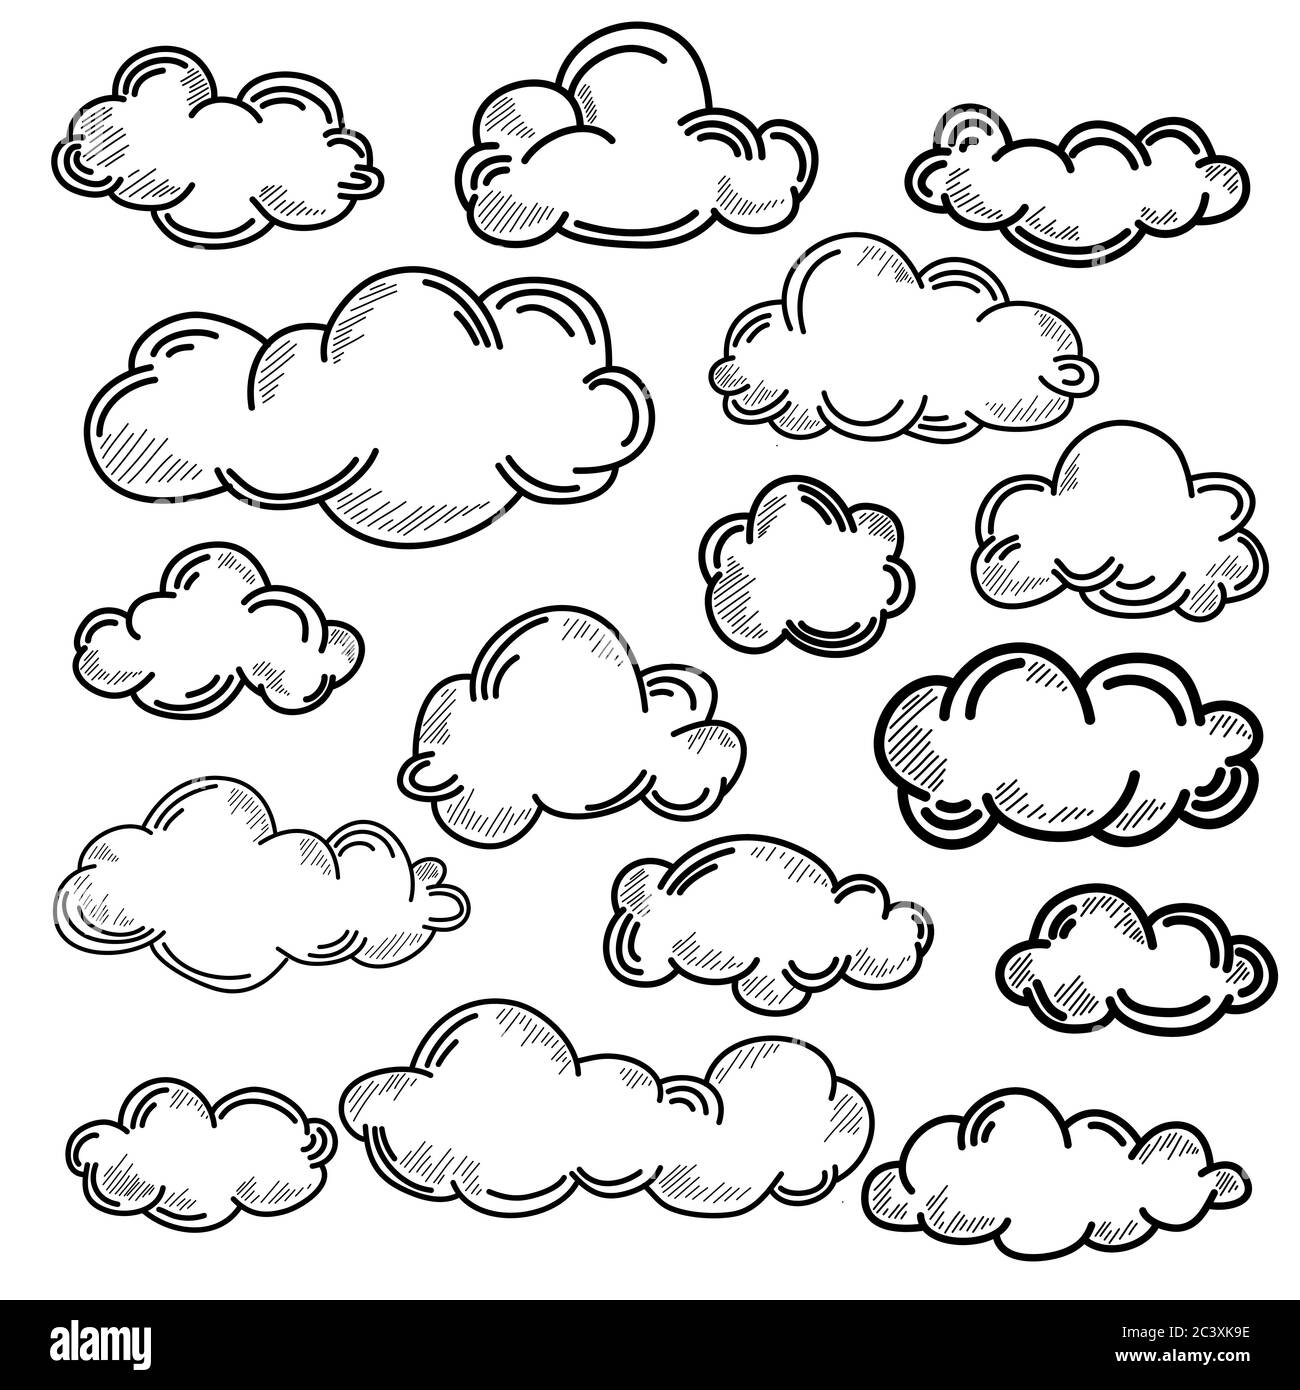 Disegnare a mano la collezione meteo. Illustrazione vettoriale di stile piatto. Nubi doodle Set. Contorno del paesaggio nuvoloso stilizzato nel cielo. Illustrazione Vettoriale